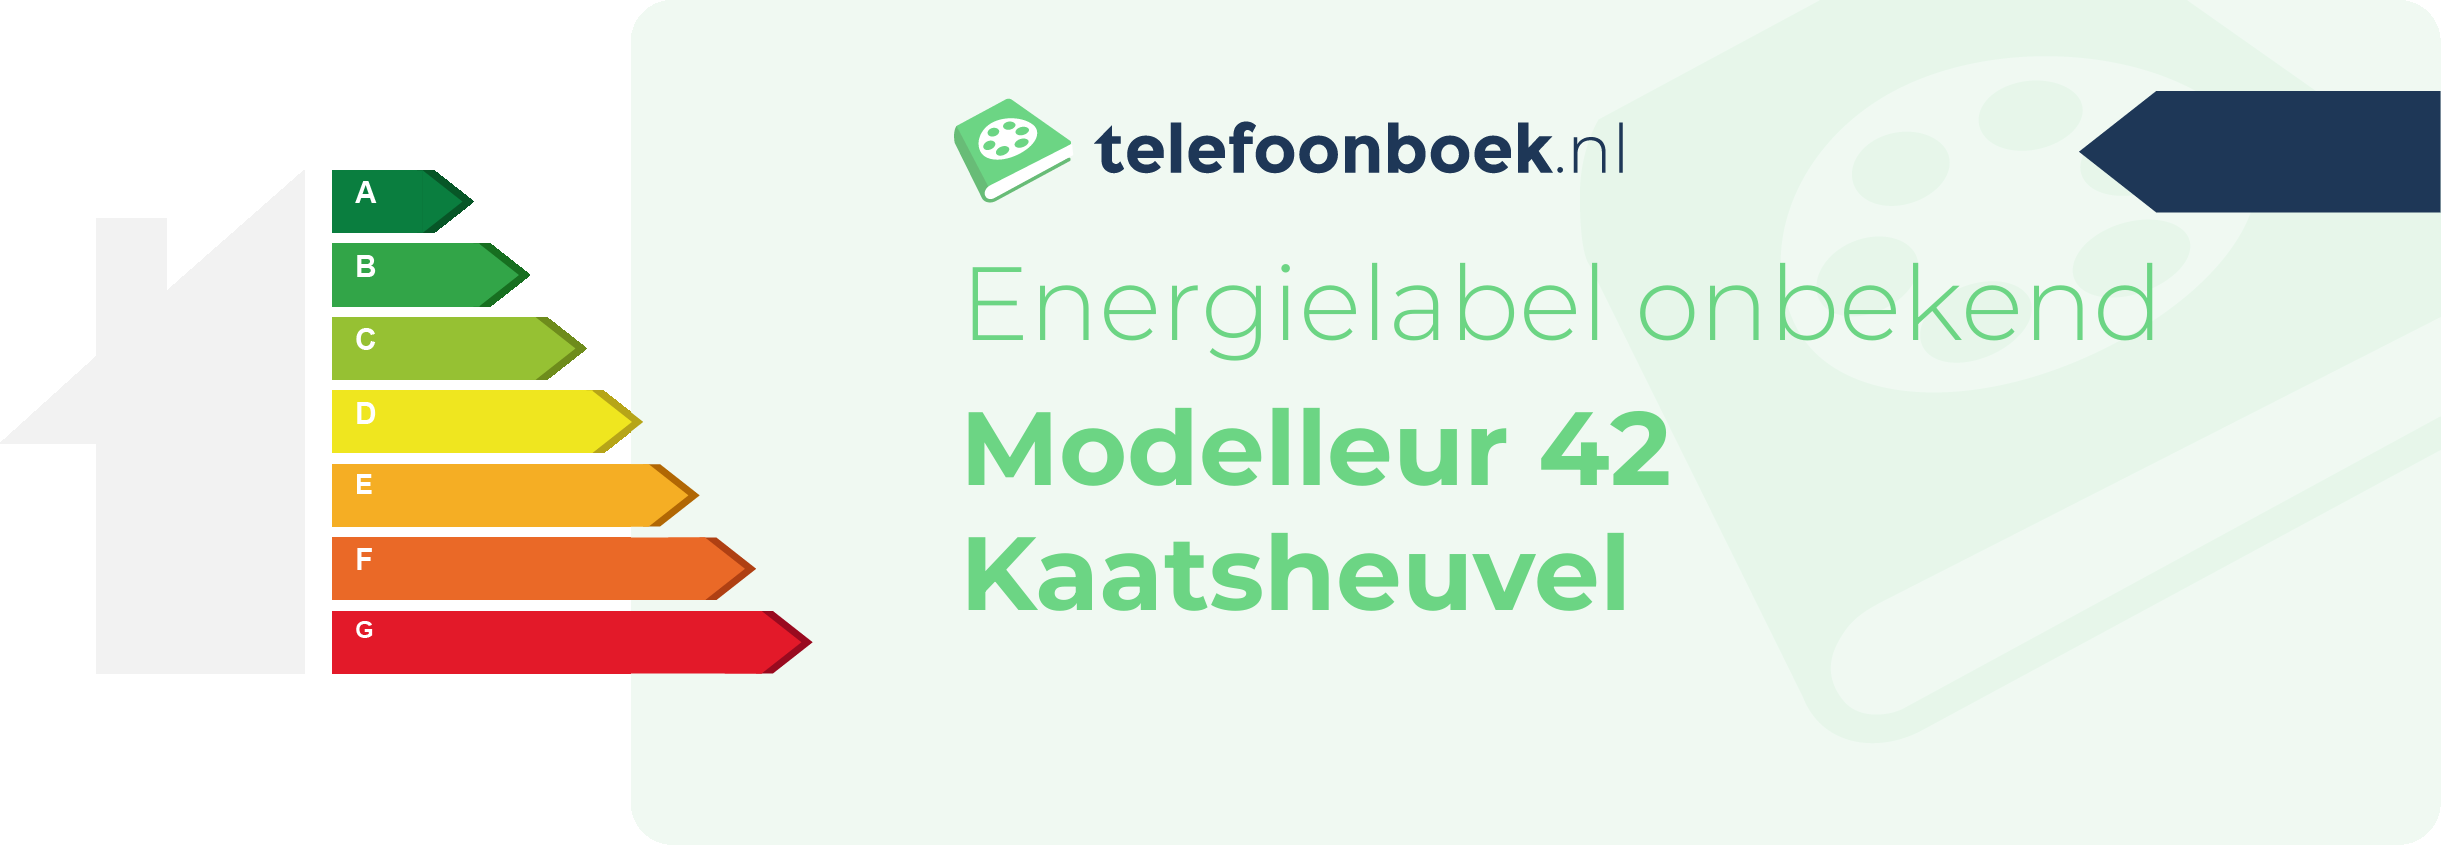 Energielabel Modelleur 42 Kaatsheuvel